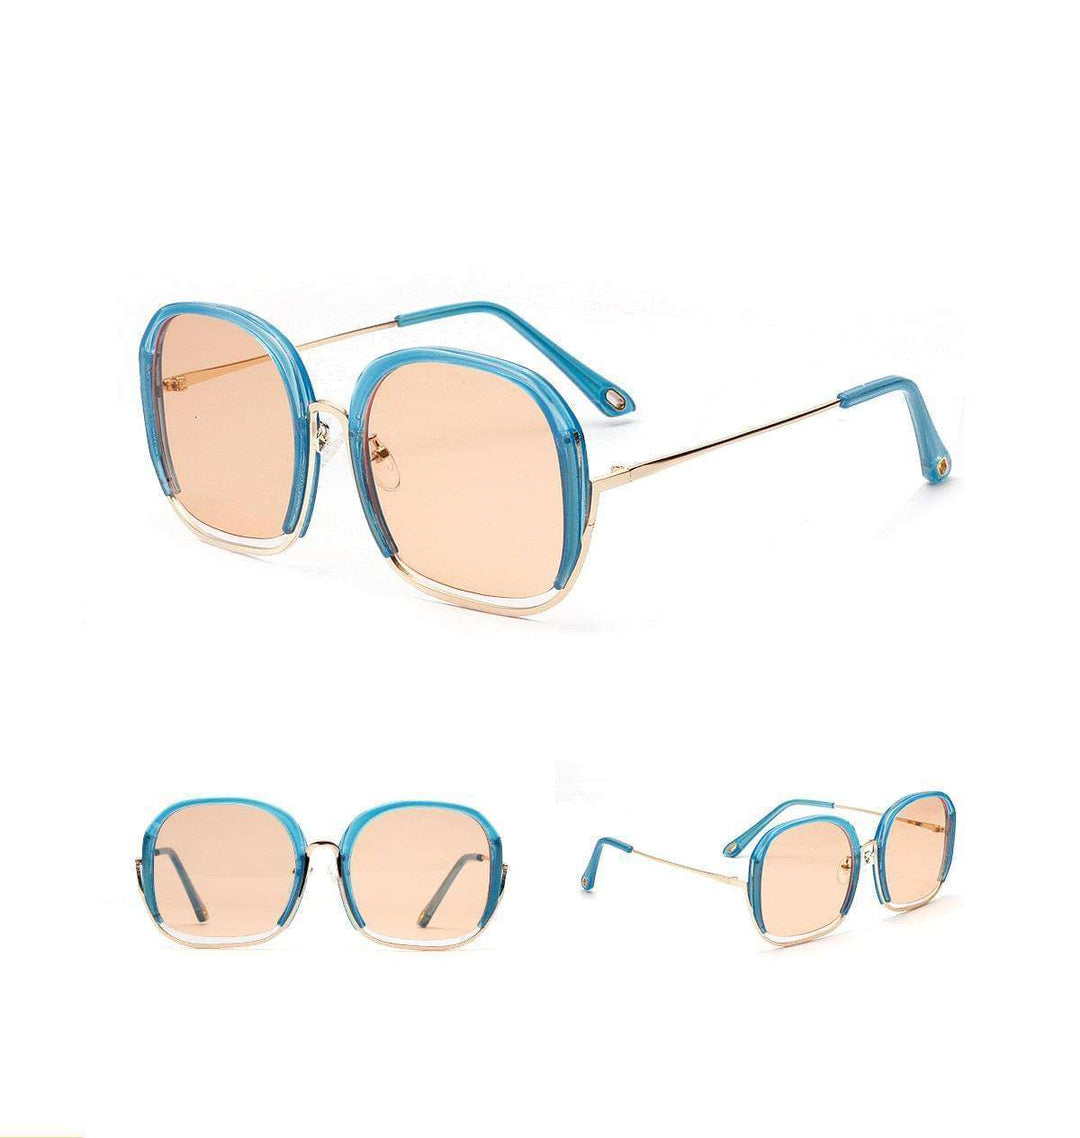 Colourful Fashionable Large Half Frame Sunglasses